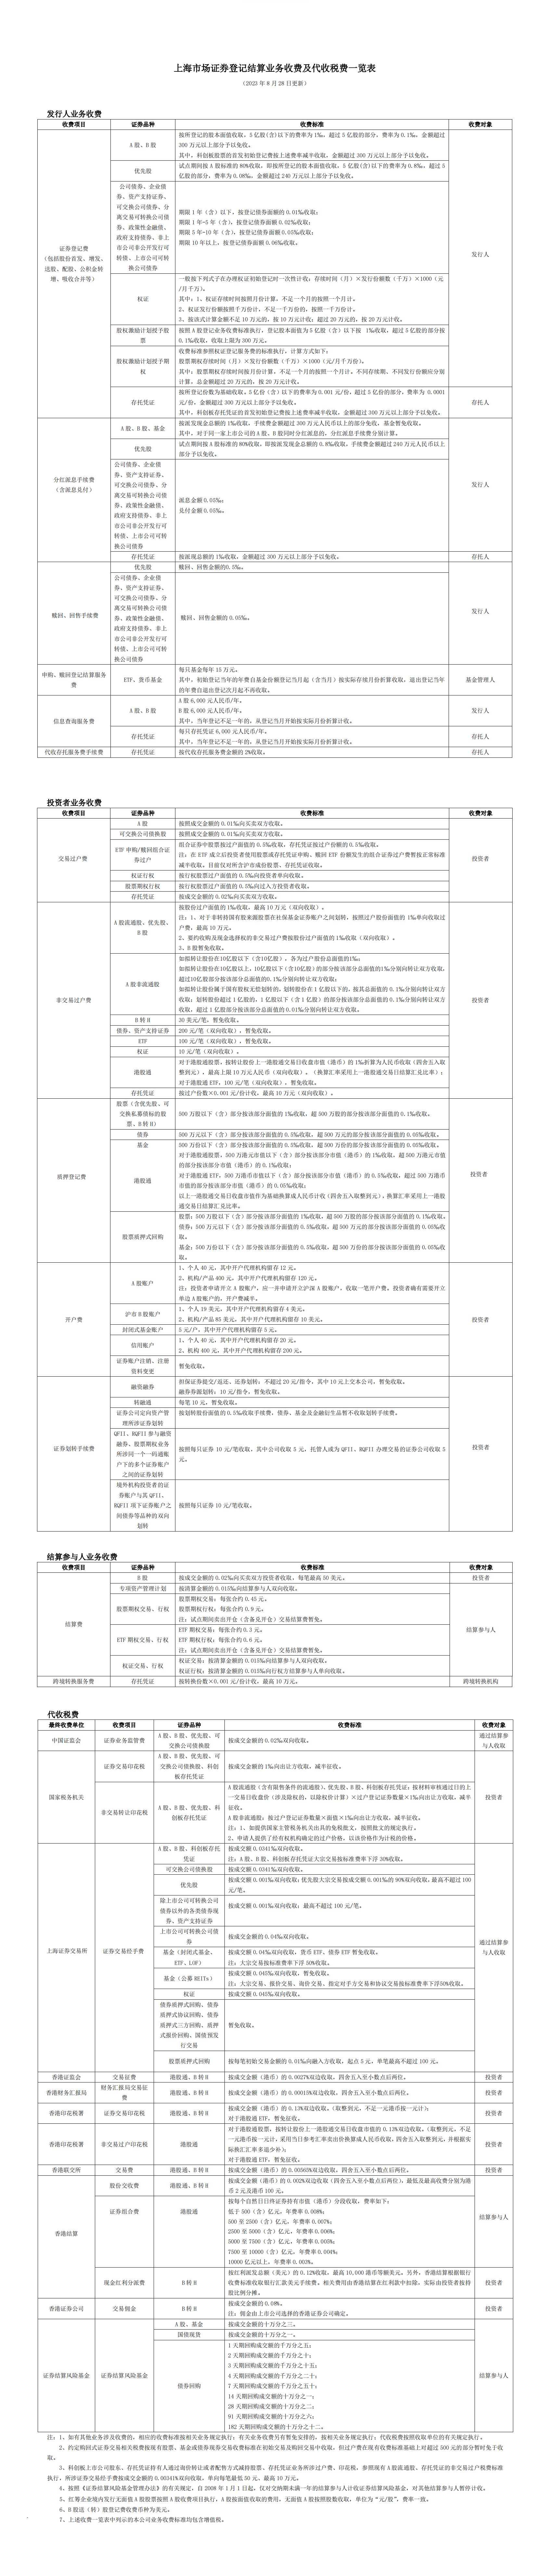 上海市场证券登记结算业务收费及代收税费一览表.jpg